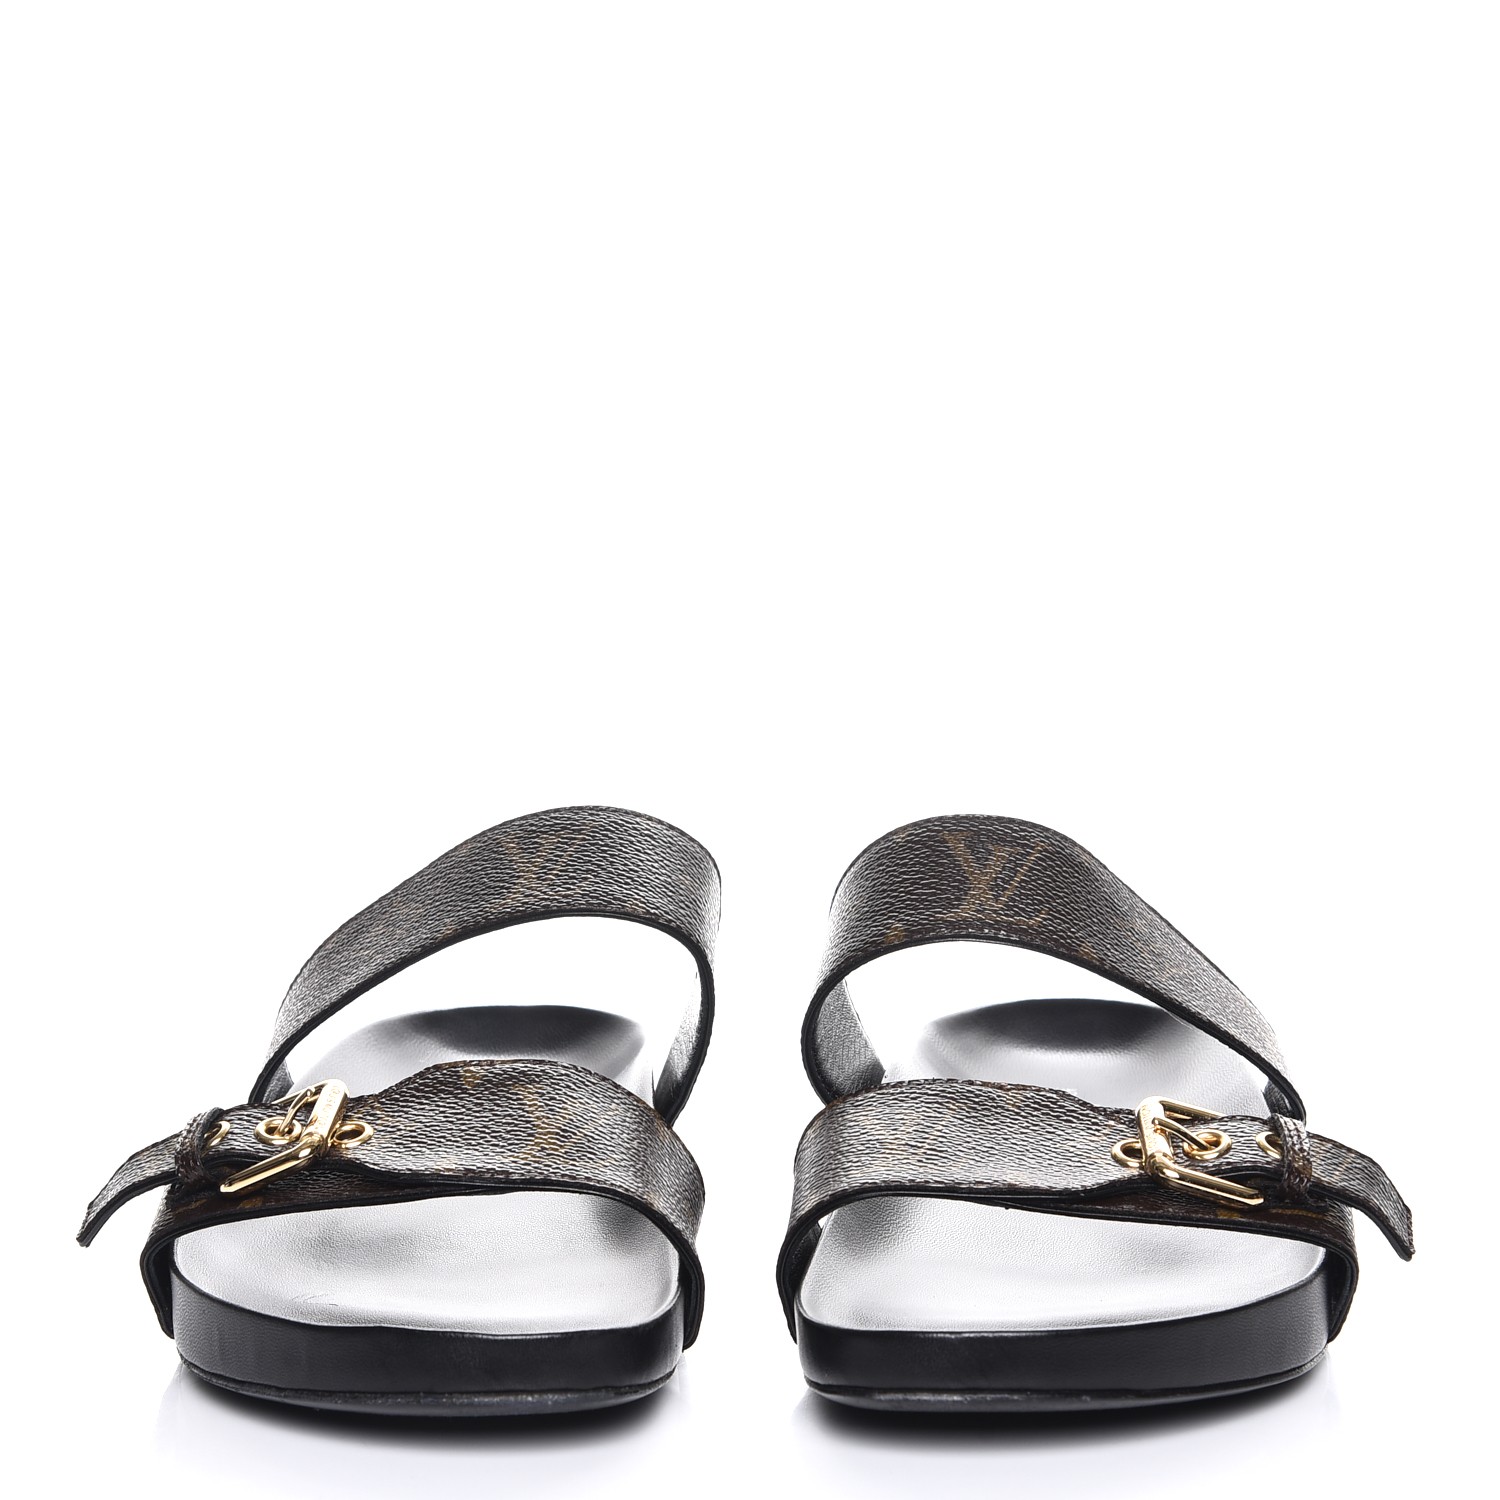 Louis Vuitton Bom Dia Sandals Unboxing 